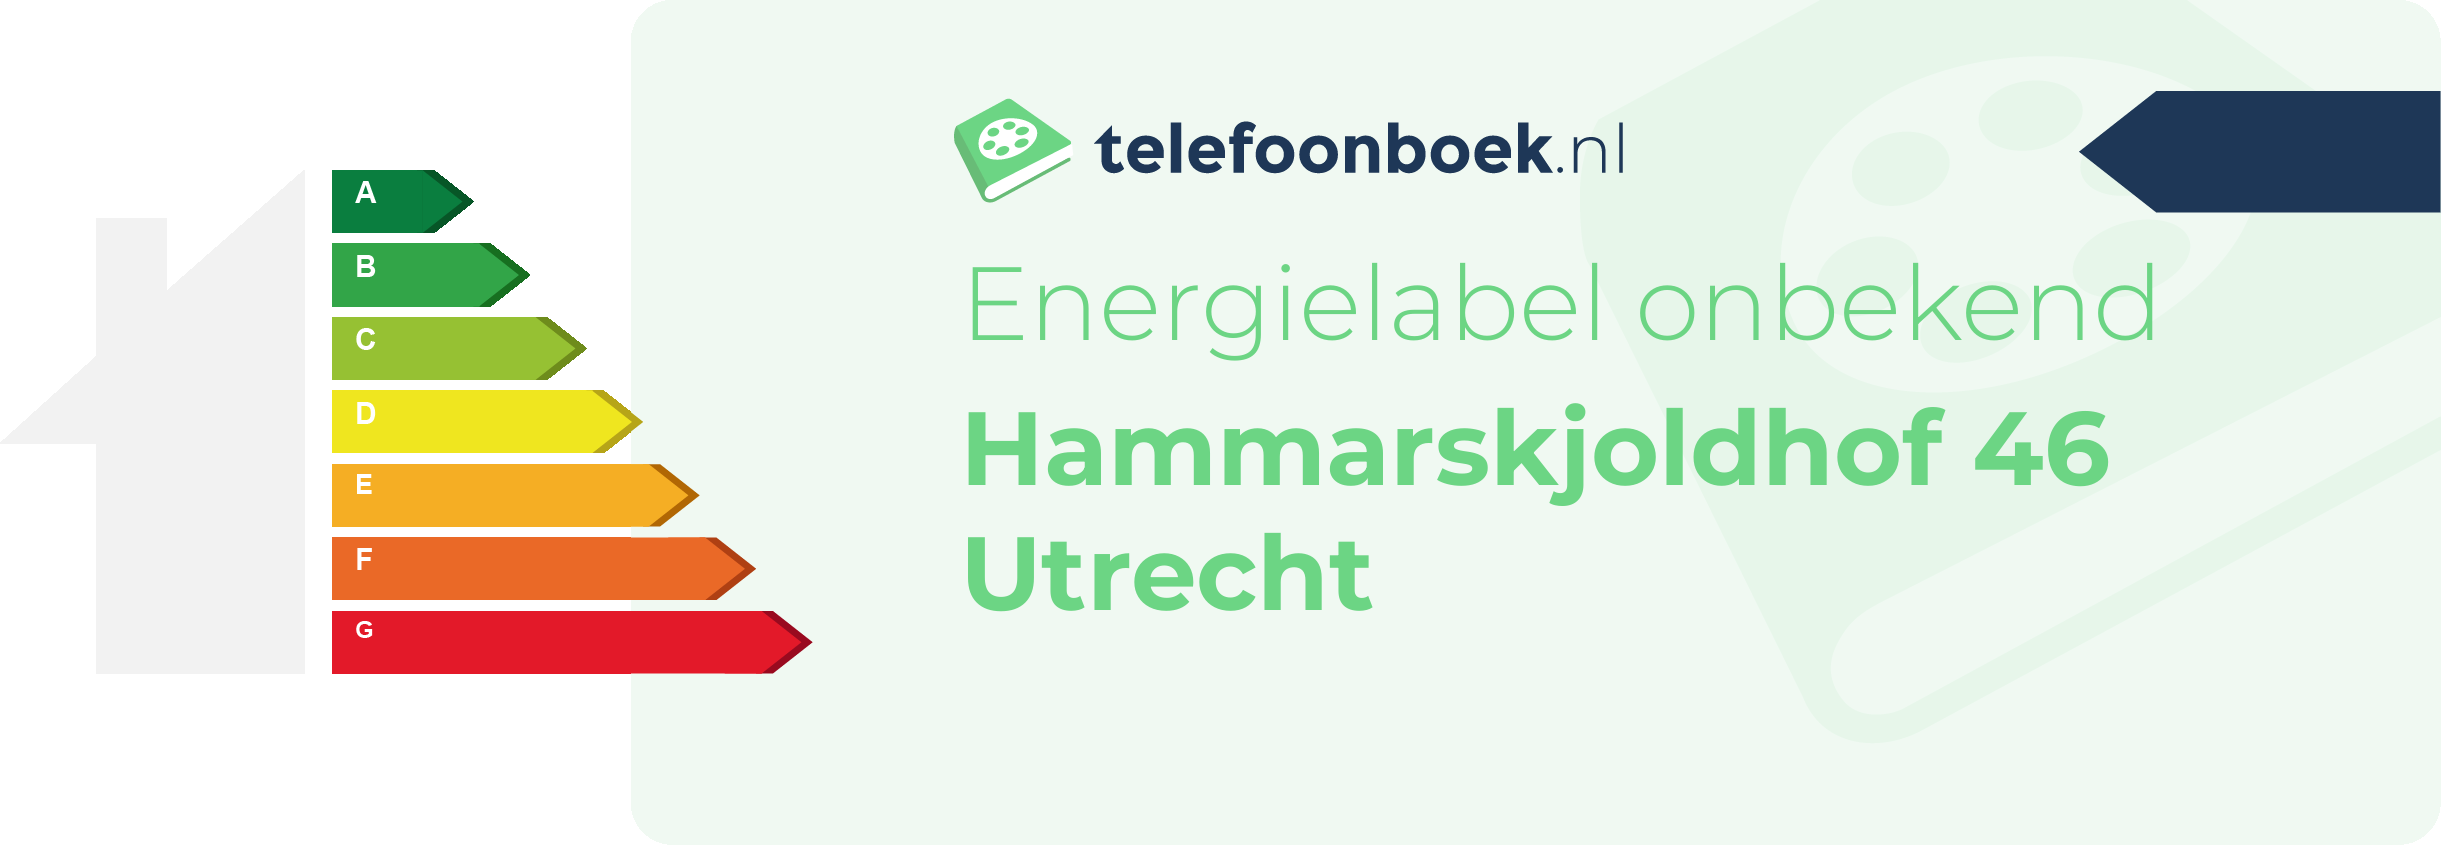 Energielabel Hammarskjoldhof 46 Utrecht